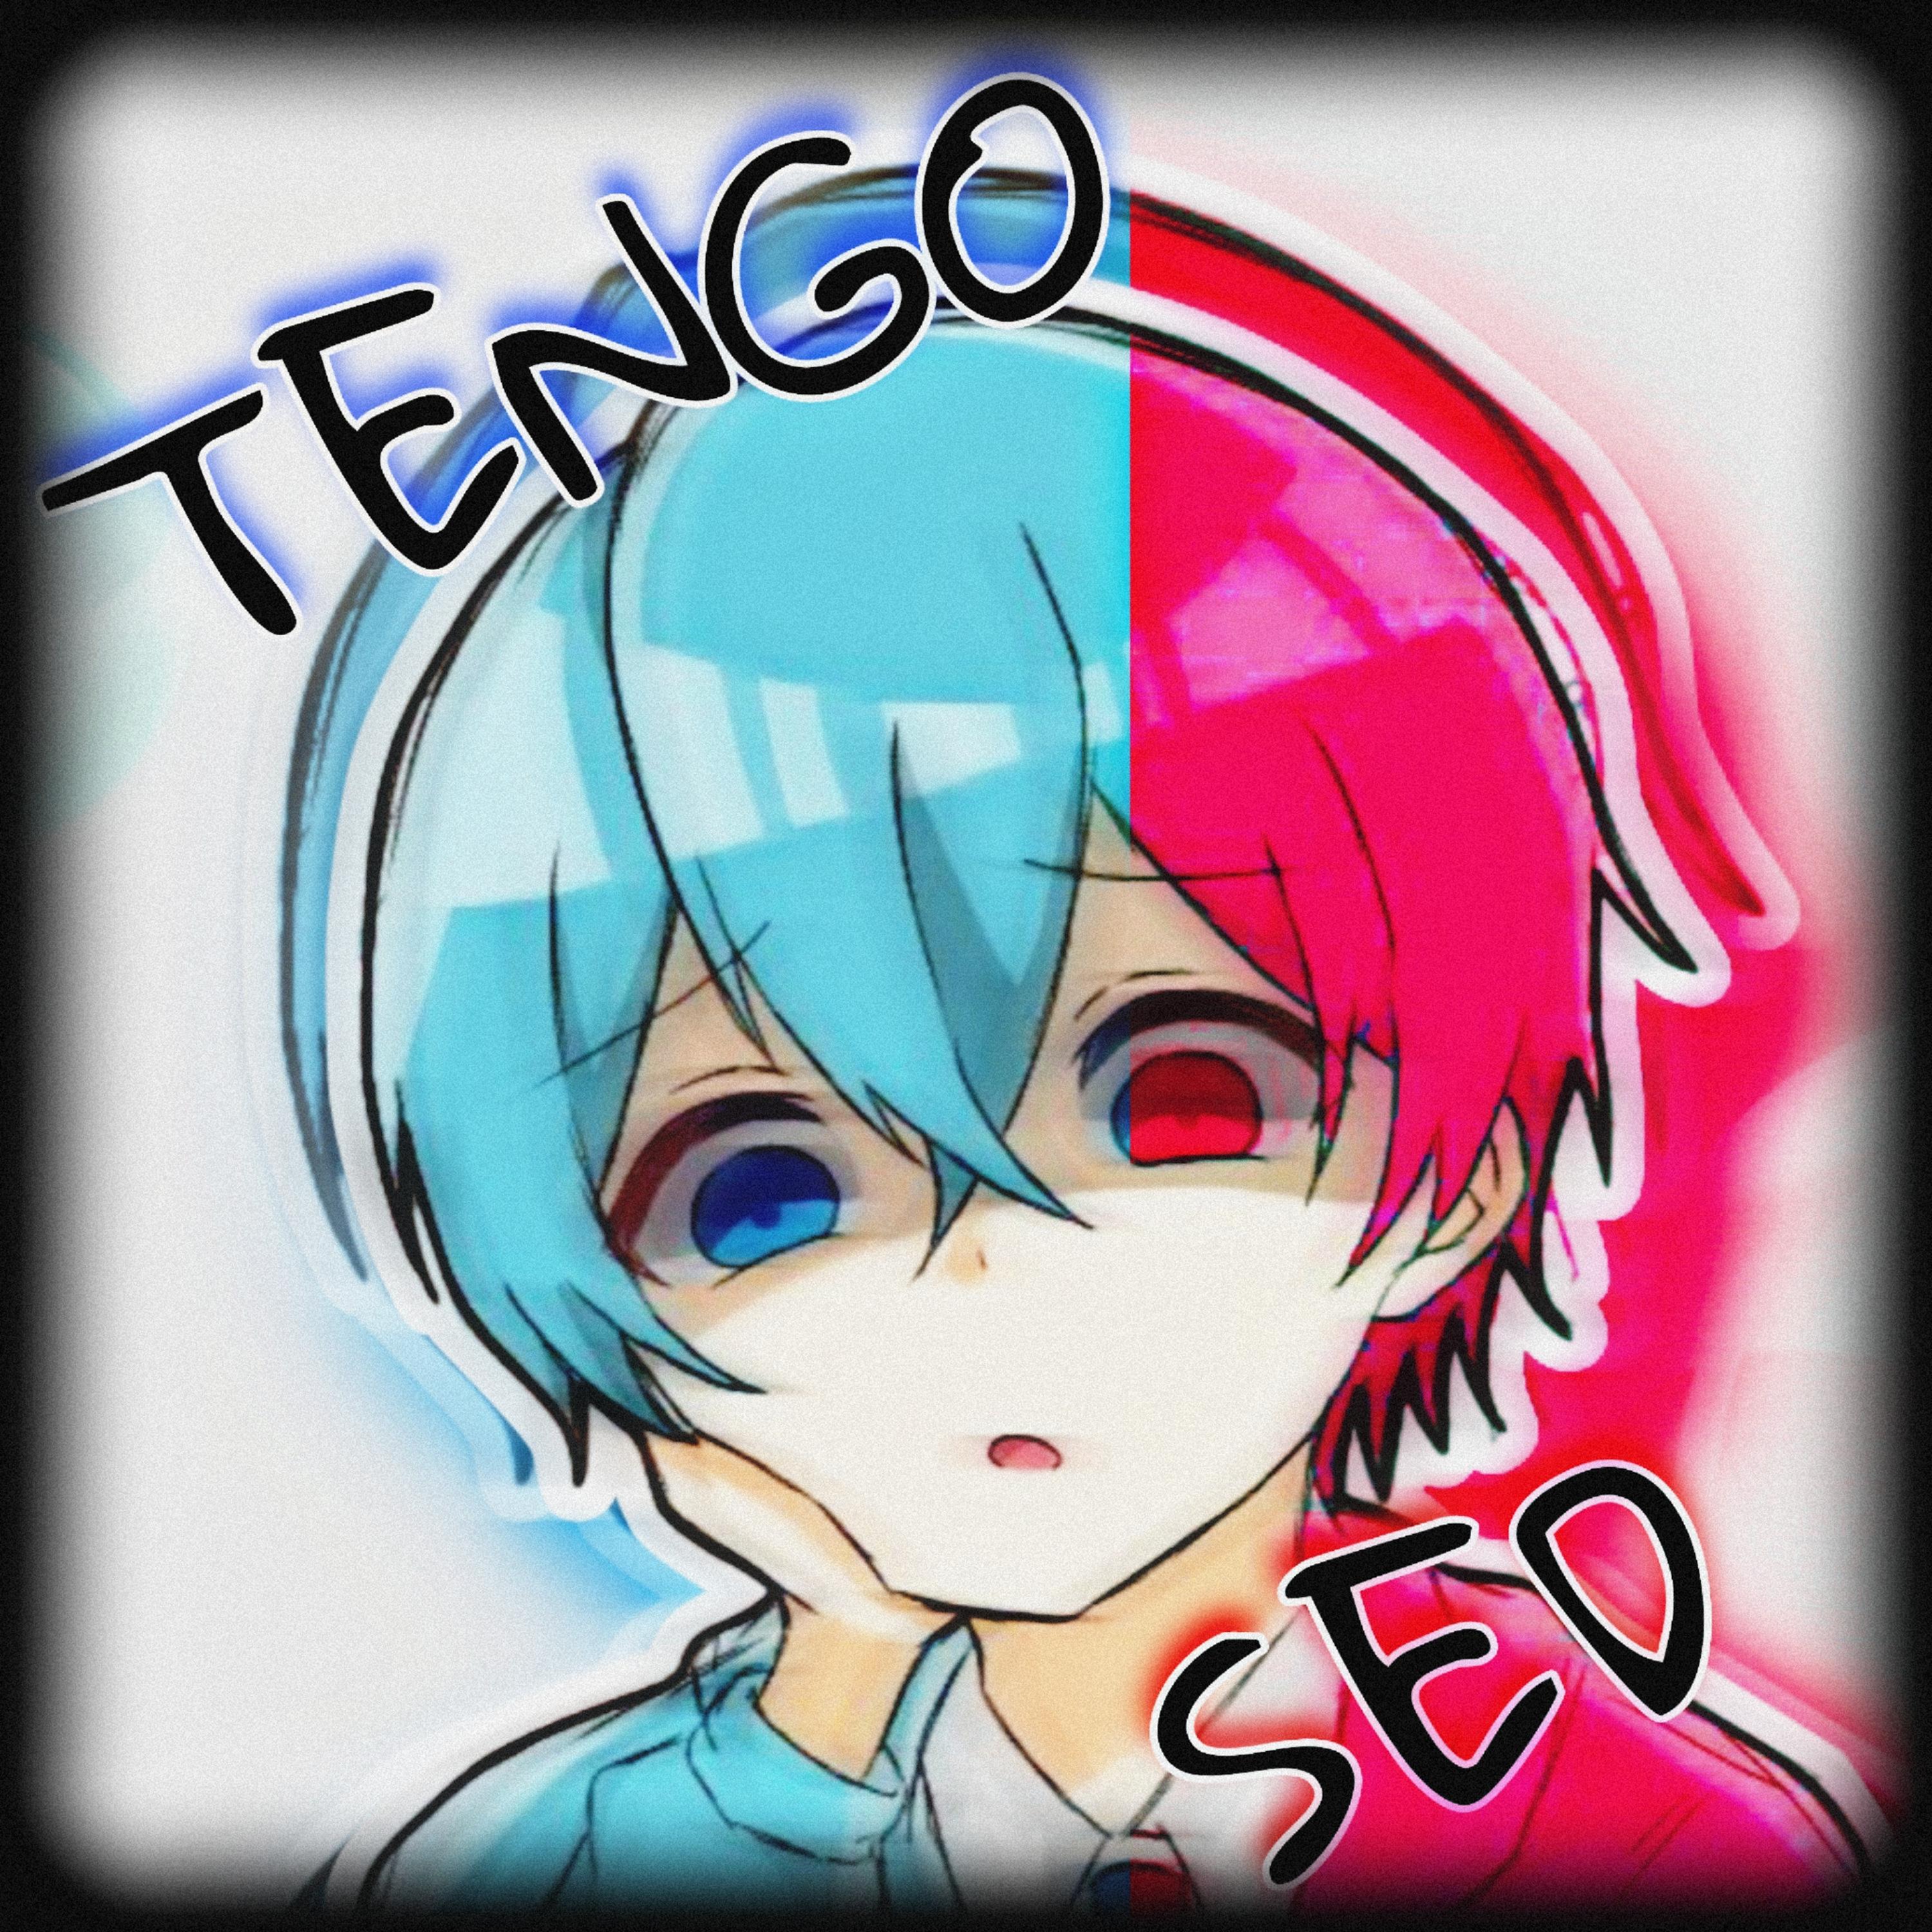 Постер альбома Tengo Sed